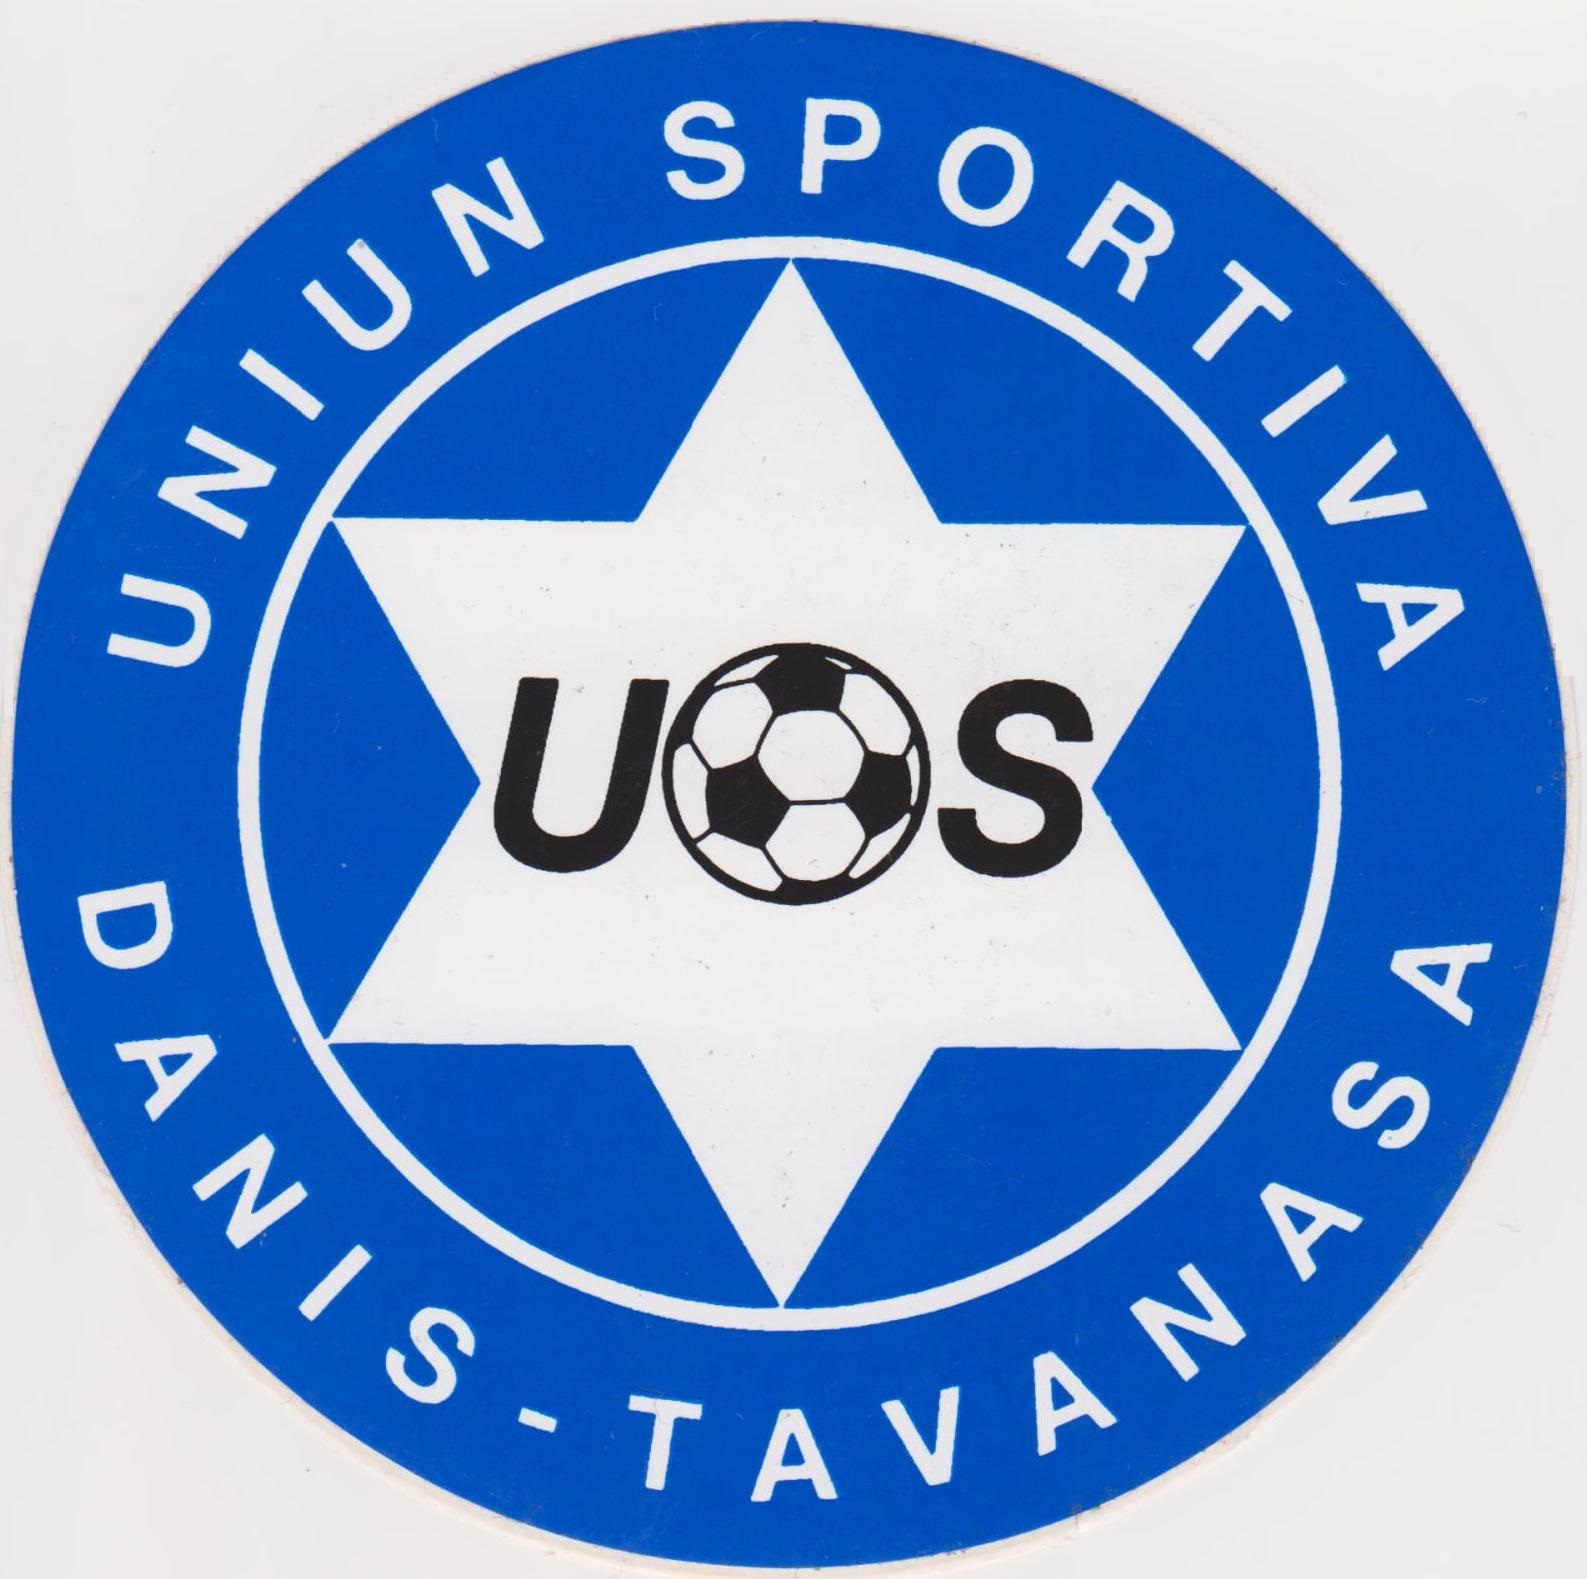 Uniun sportiva / Sportverein Danis-Tavanasa